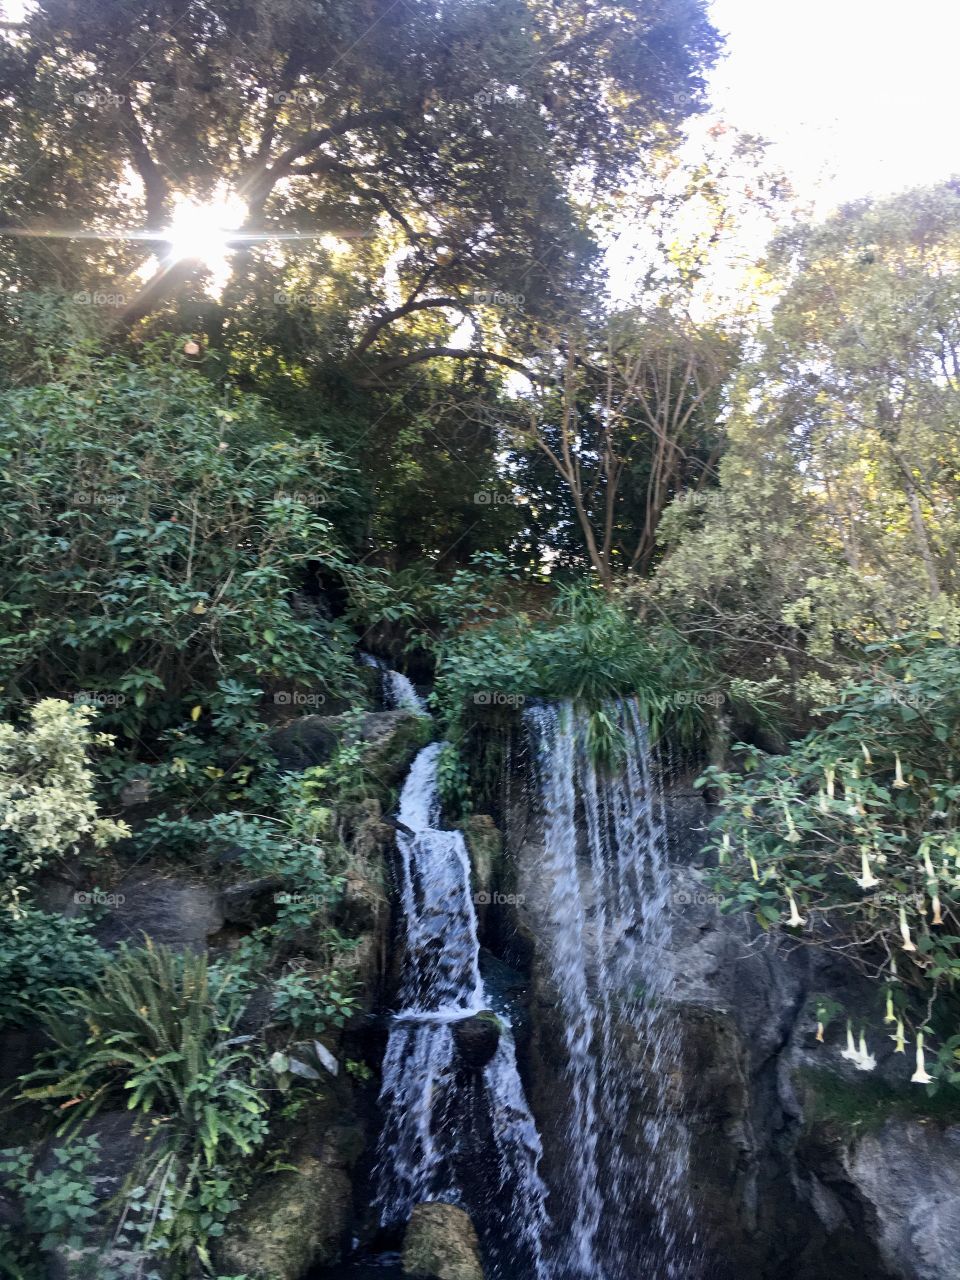 Los Angeles Arboretum and Botanic Garden